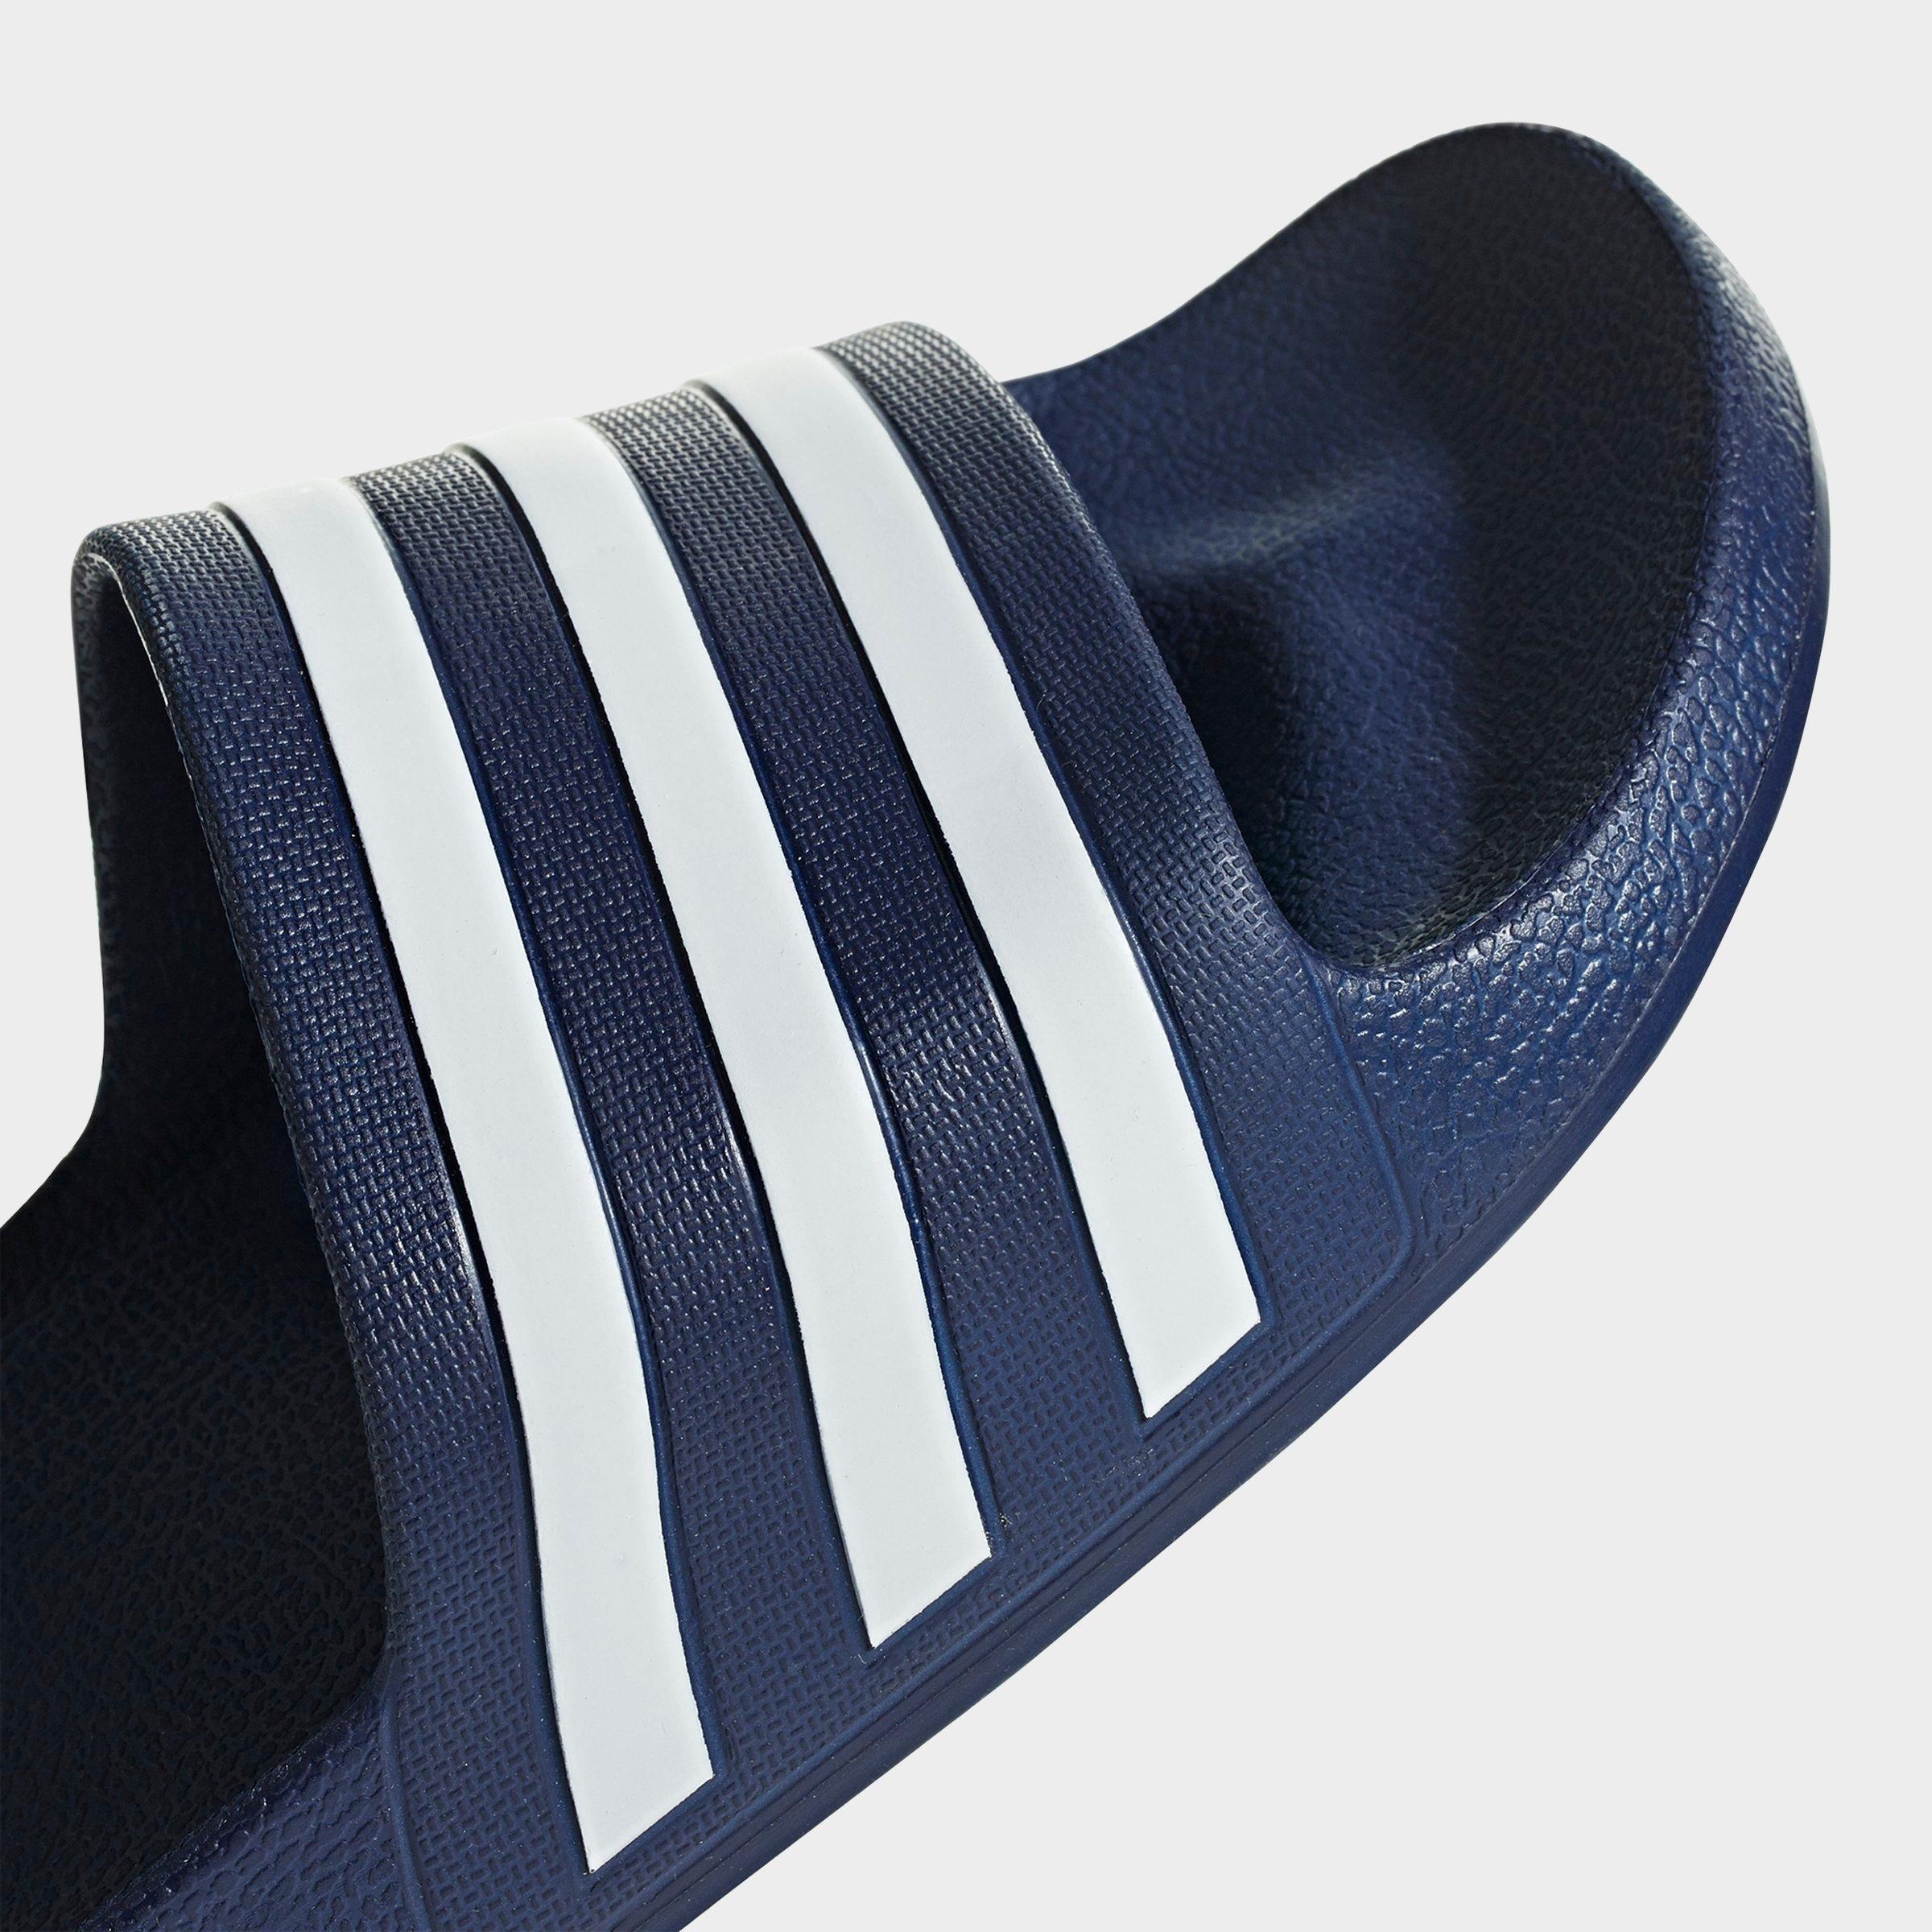 dark blue adidas slides